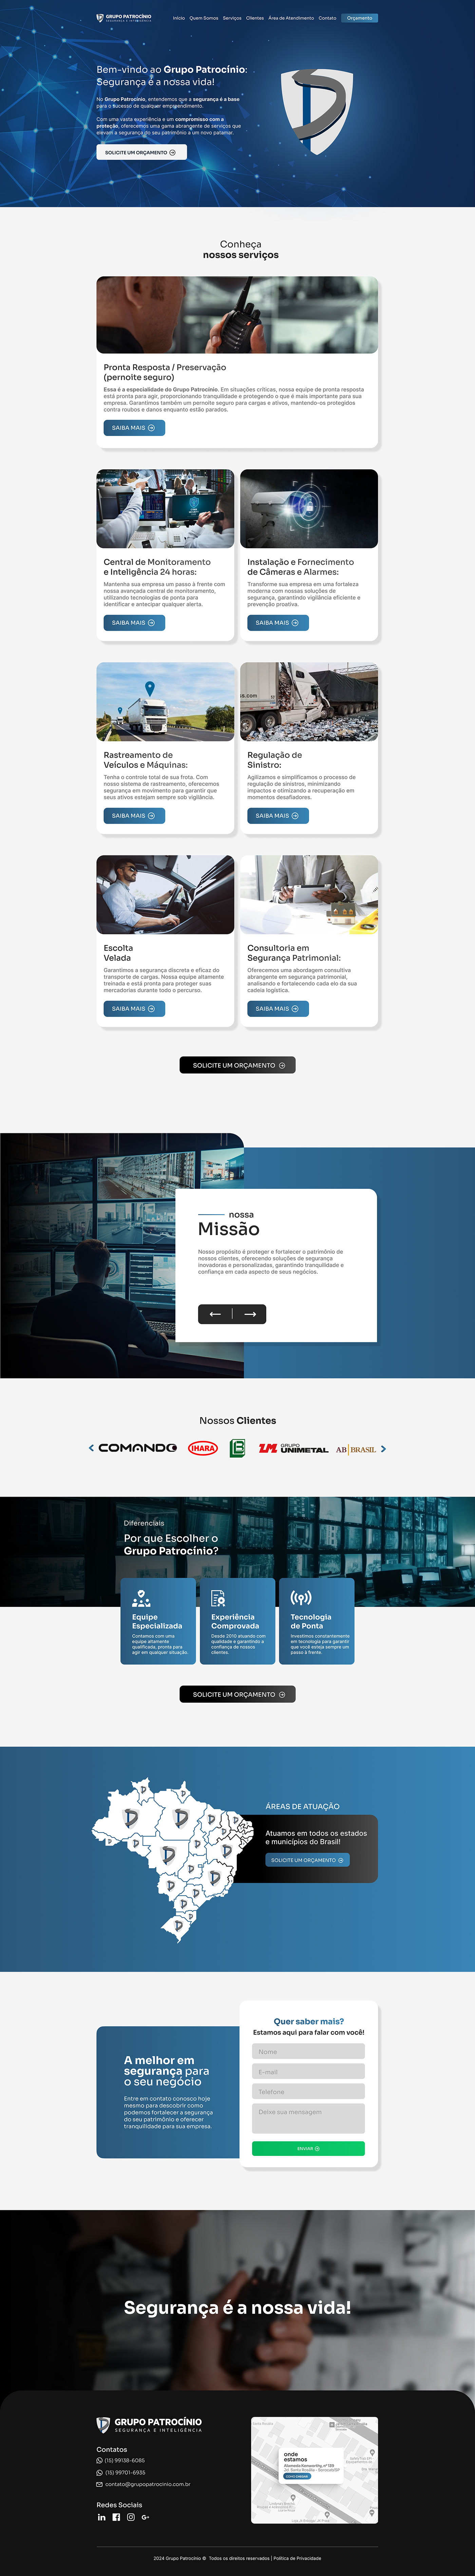 Página home de site institucional desenvolvido para a empresa Grupo Patrocínio.